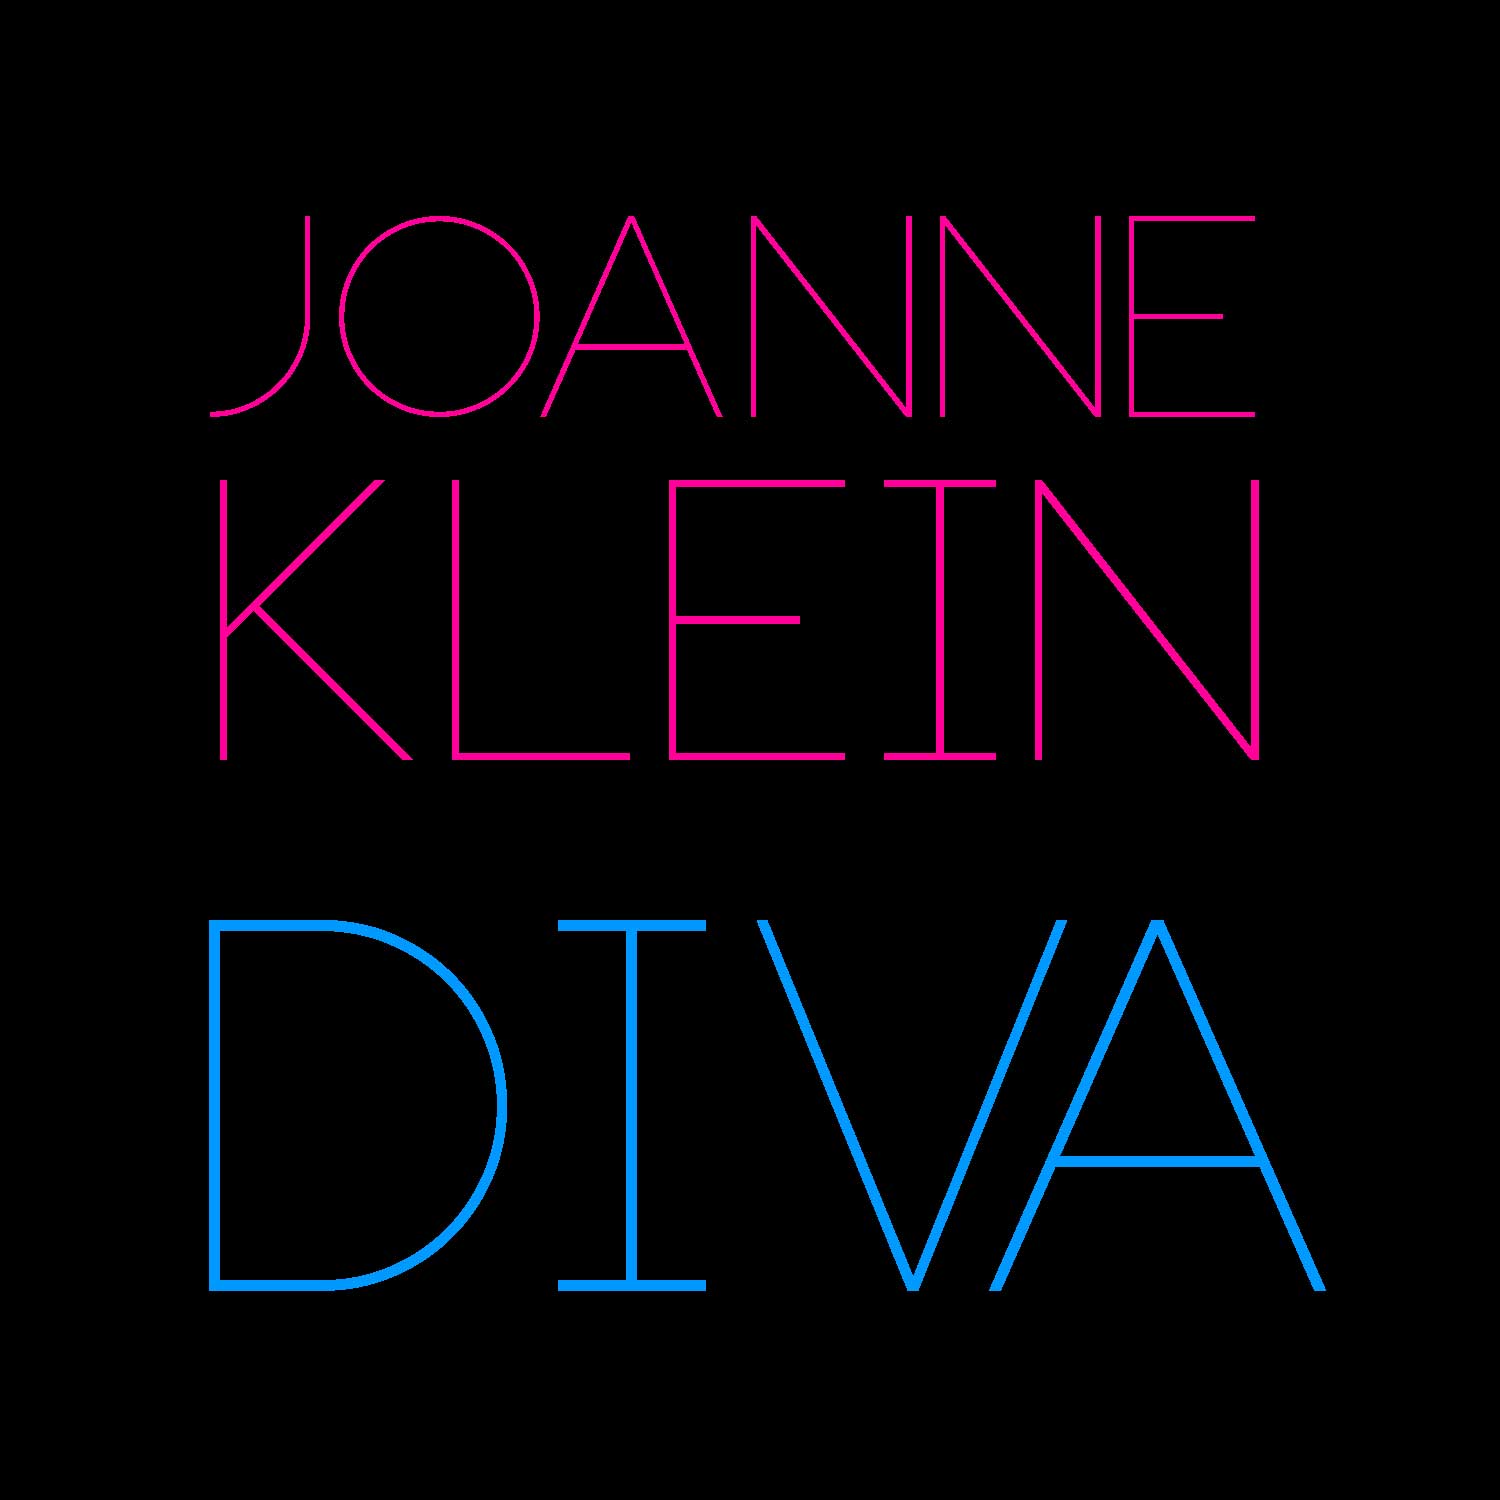 Joanne Klein Diva demo album cover